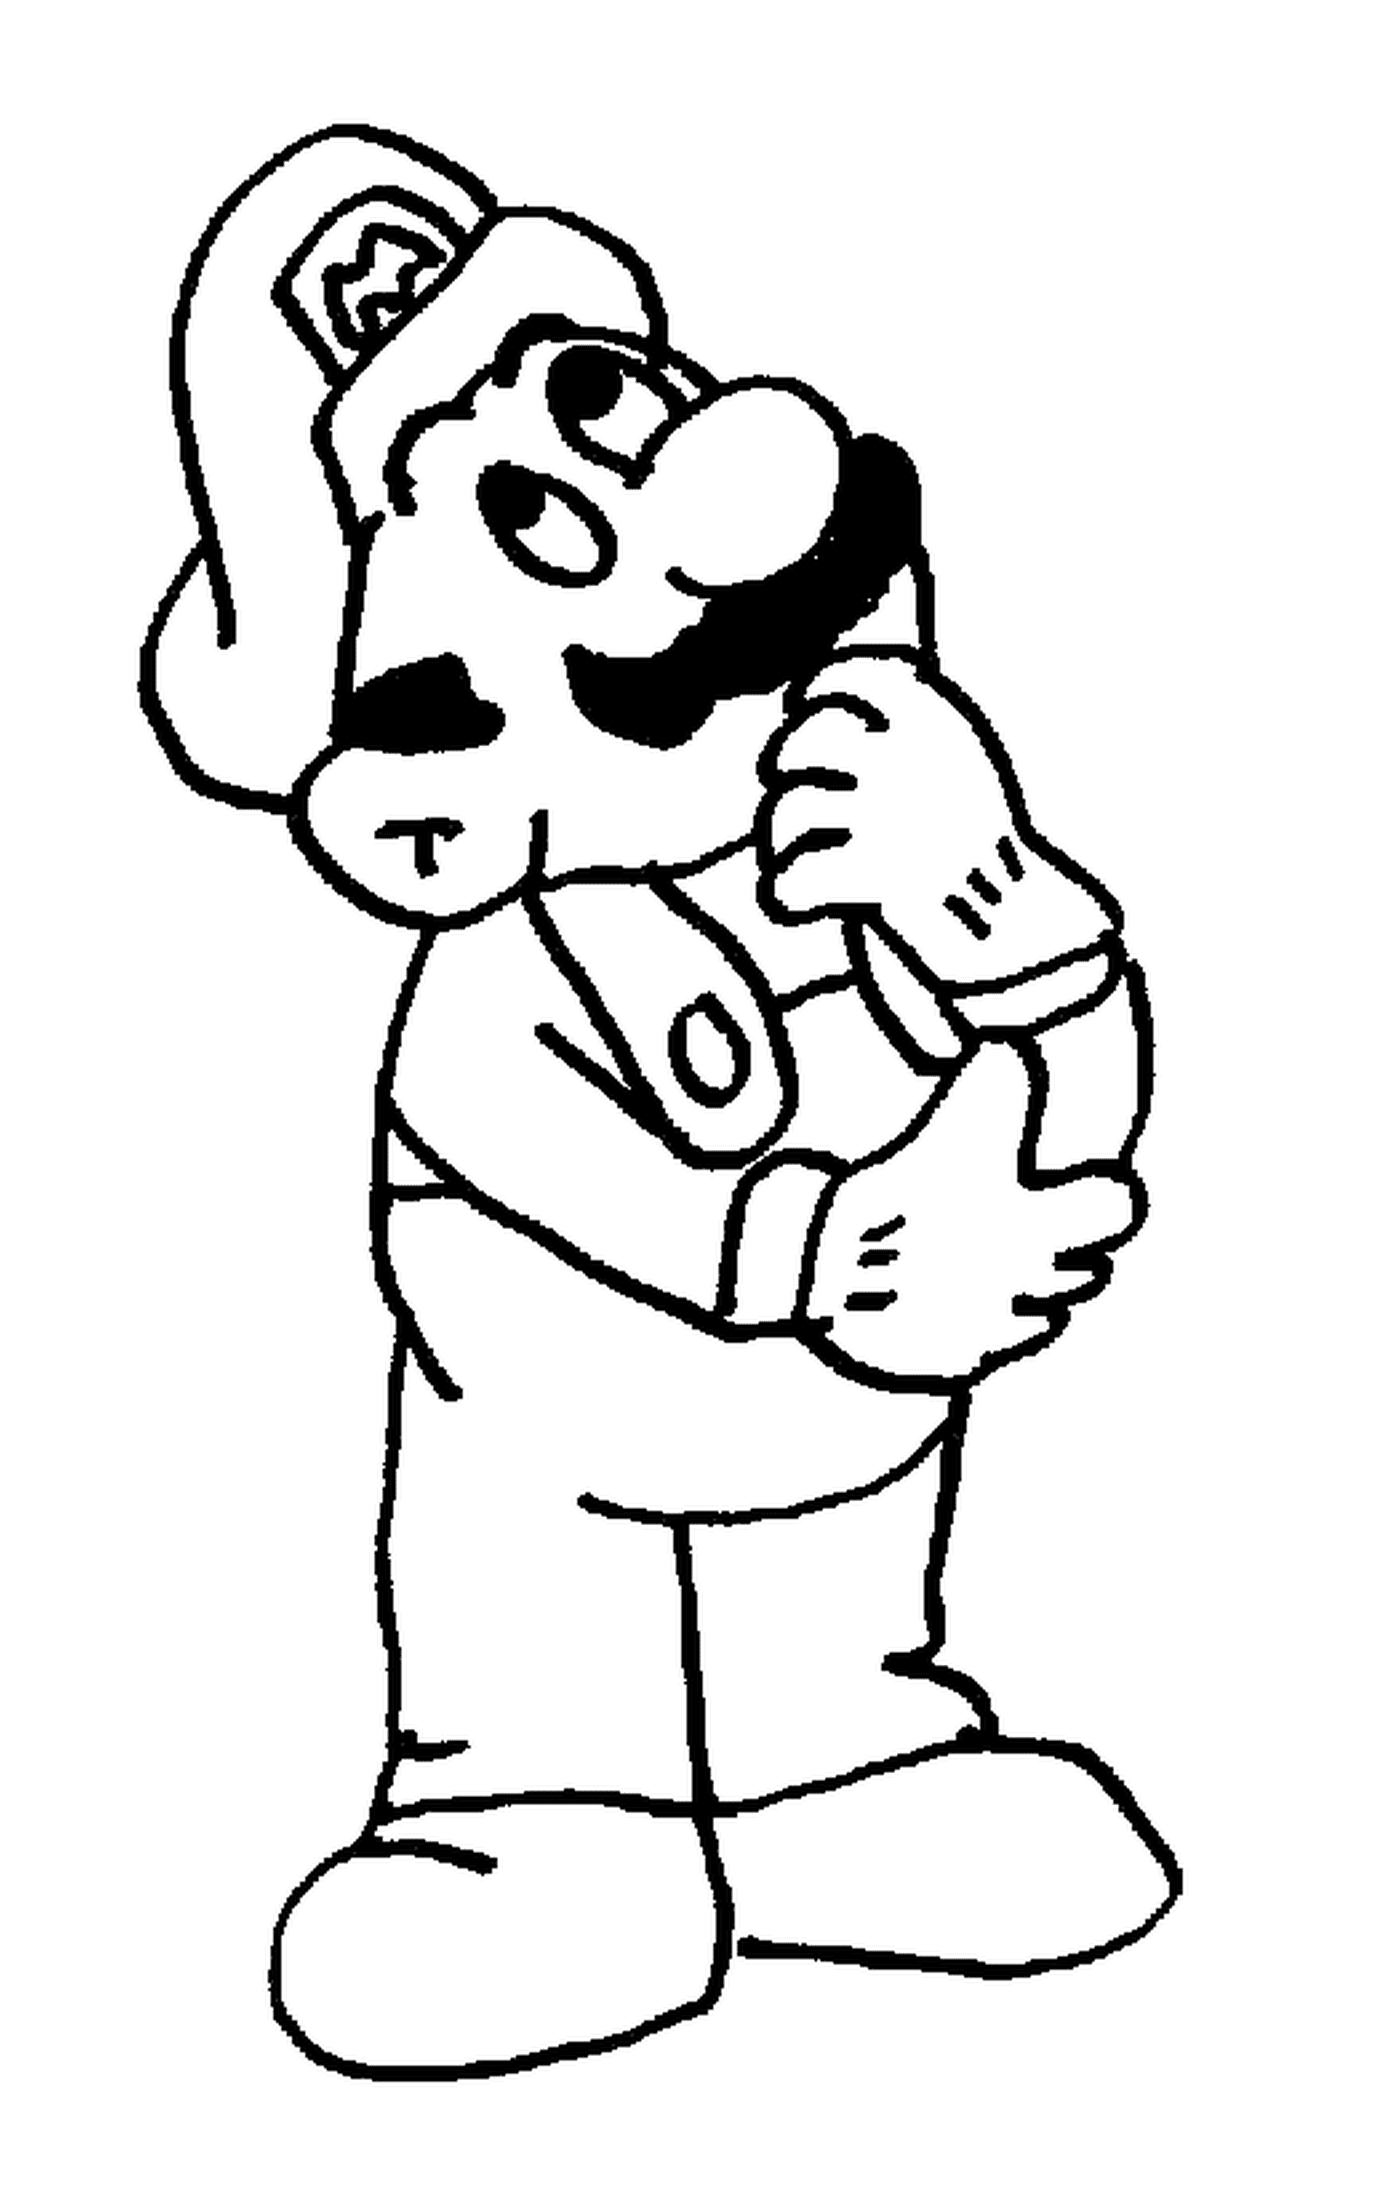  Mario, a pensive man with a mustache 